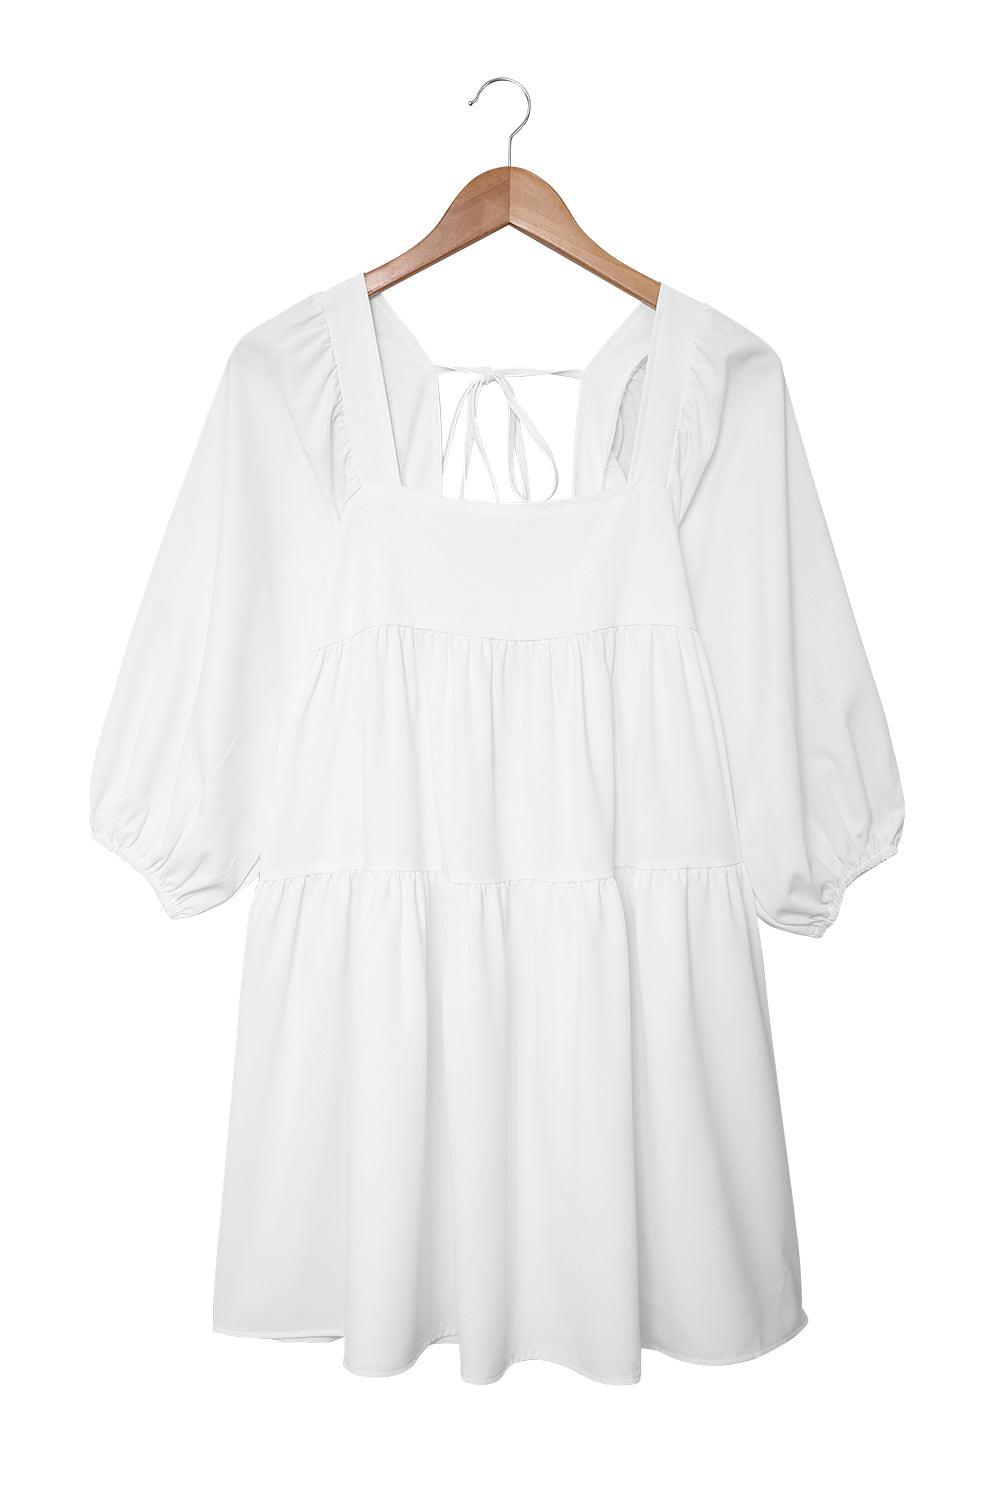 Square Neck Half Sleeve High Low Mini Dress - L & M Kee, LLC